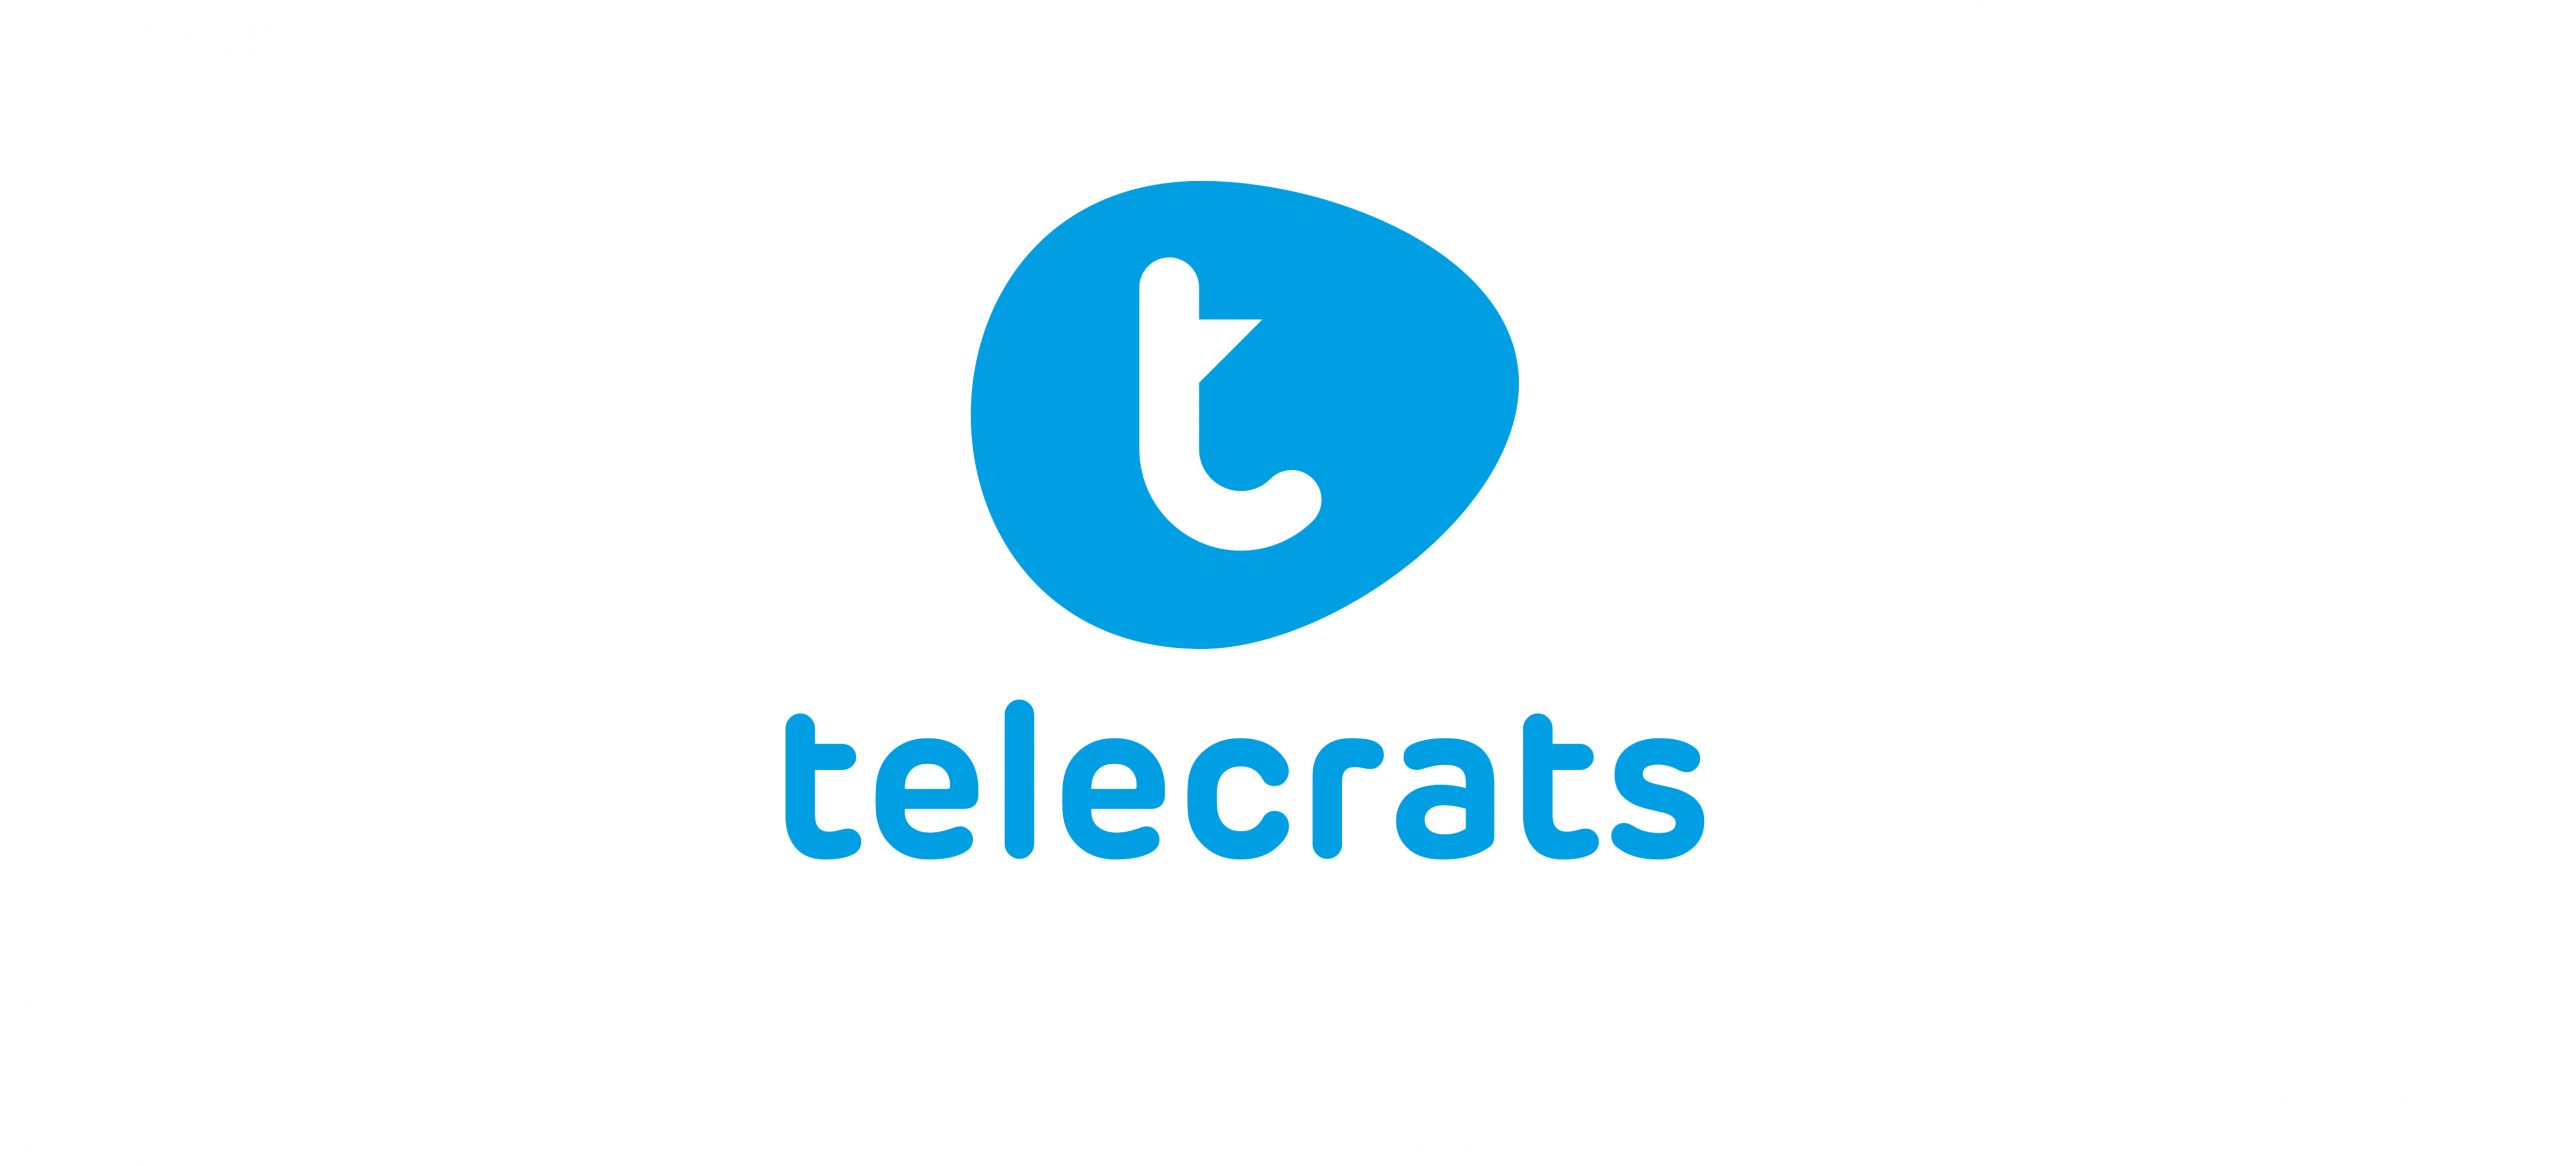 Telecrats 4